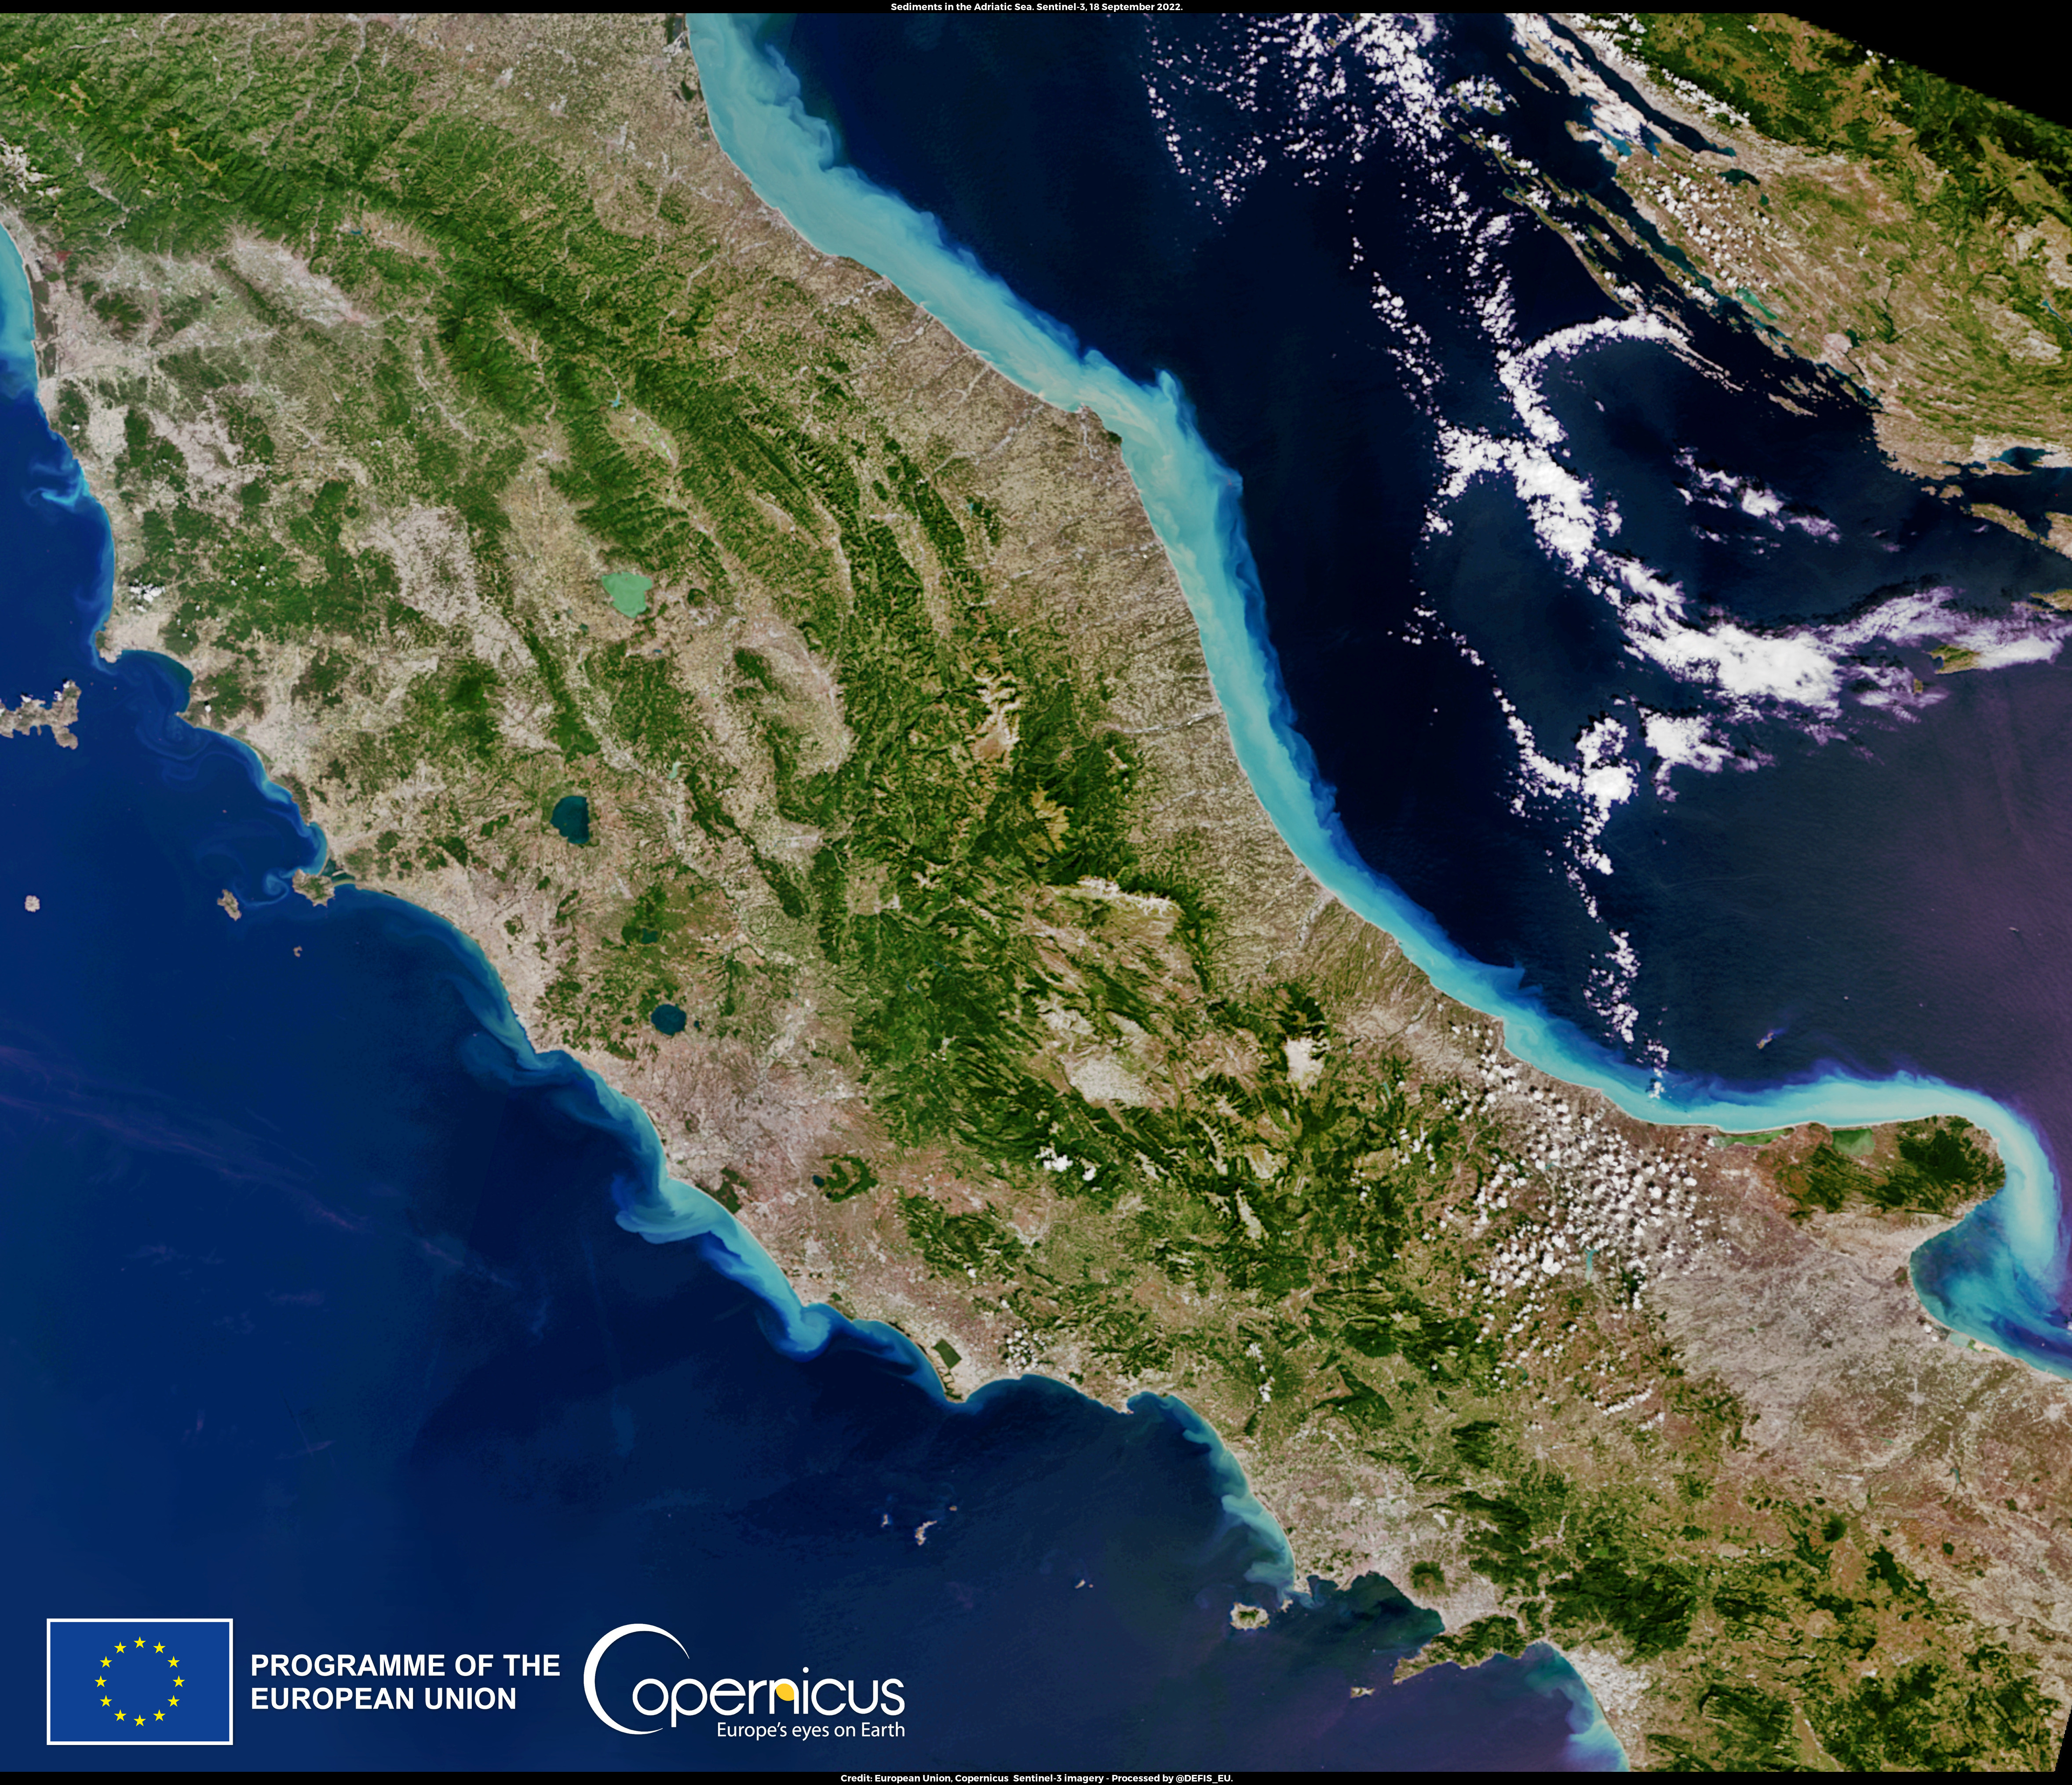 Szeptember 16-án katasztrofális áradások sújtották Közép-Olaszországot. Alig 12 óra alatt több mint 42 cm eső esett – ennyi hat hónap alatt szokott. A katasztrófa tizenegy halálos áldozatot követelt, egy nyolcéves gyermek eltűnt.<br />A Copernicus Sentinel-3 műholdak egyike által készített kép az Adriai-tengerbe az áradások következtében ömlő hordalékot mutatja. A folyók által a tengerbe hordott üledéket a szél és a tengeri áramlatok szállították, az olasz Adria partjainál végigterjedt, világosbarna és kék árnyalatúvá festve a vizet.<br /><br />https://www.copernicus.eu/en/media/image-day-gallery/disastrous-floods-hit-central-italy